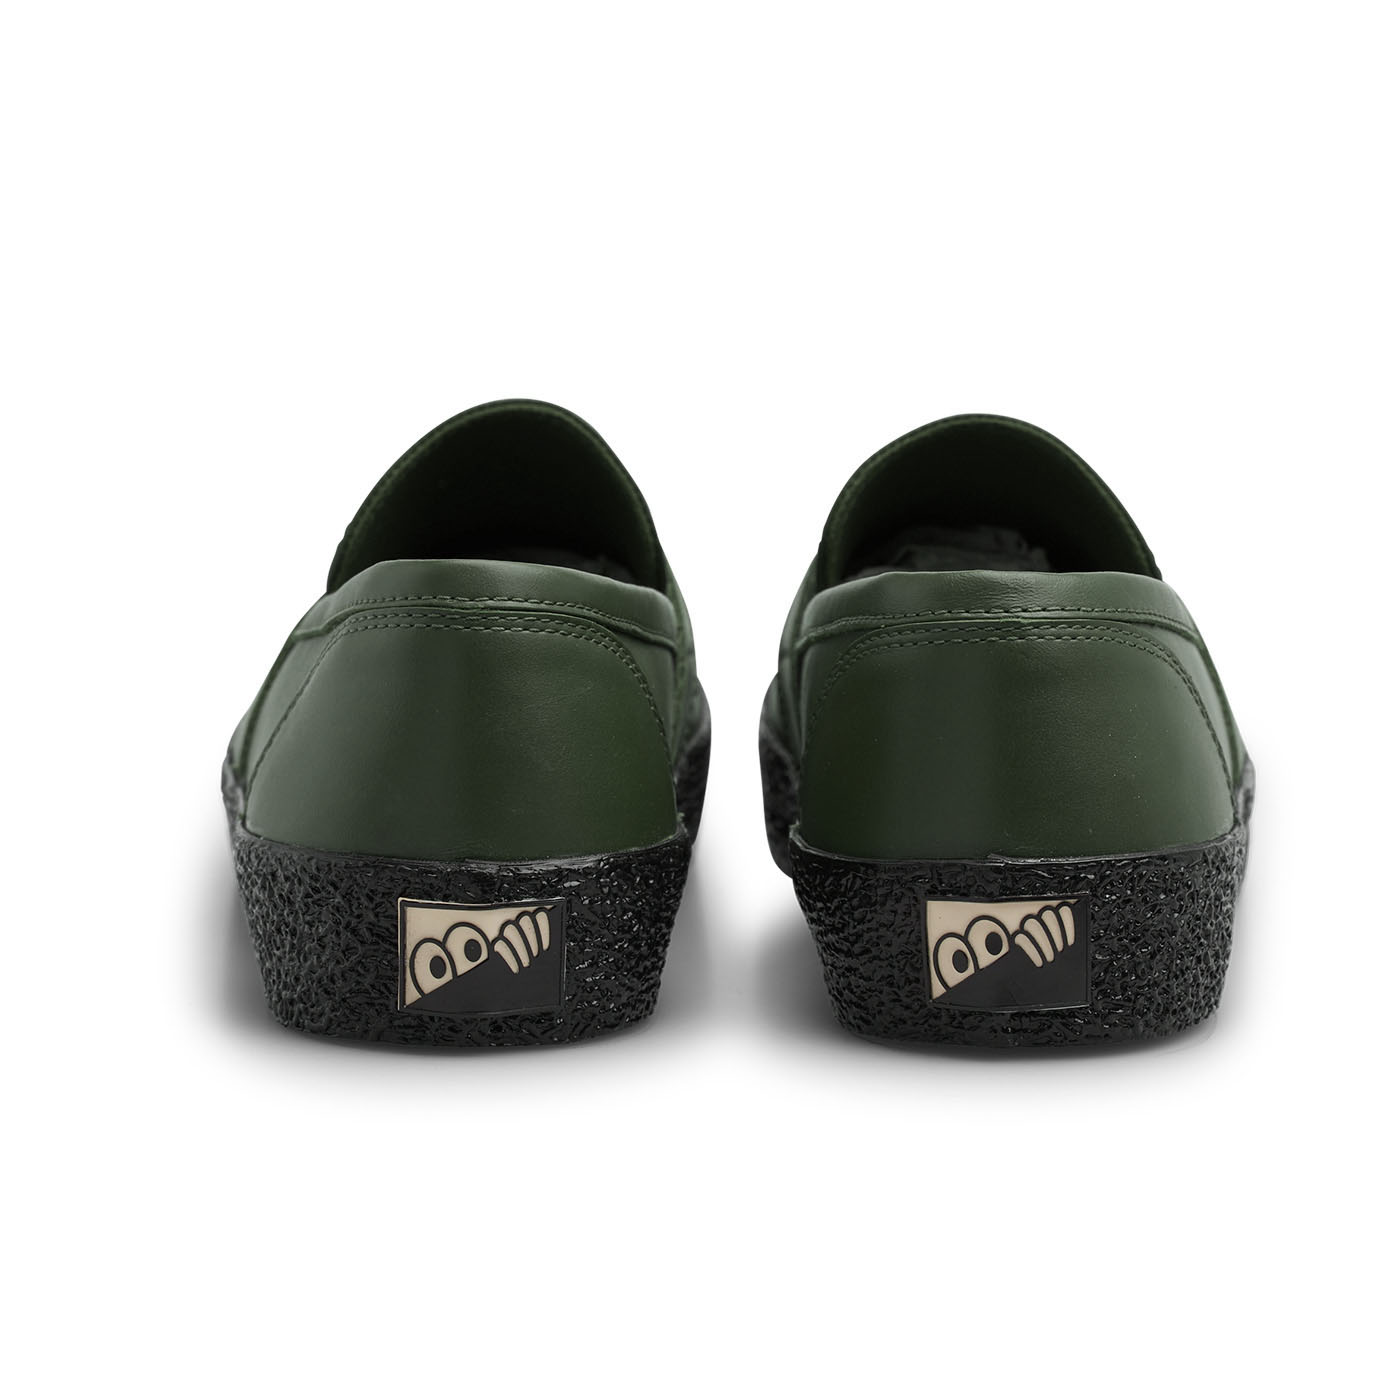 VM005-Loafer Leather (Dark Green/Black)